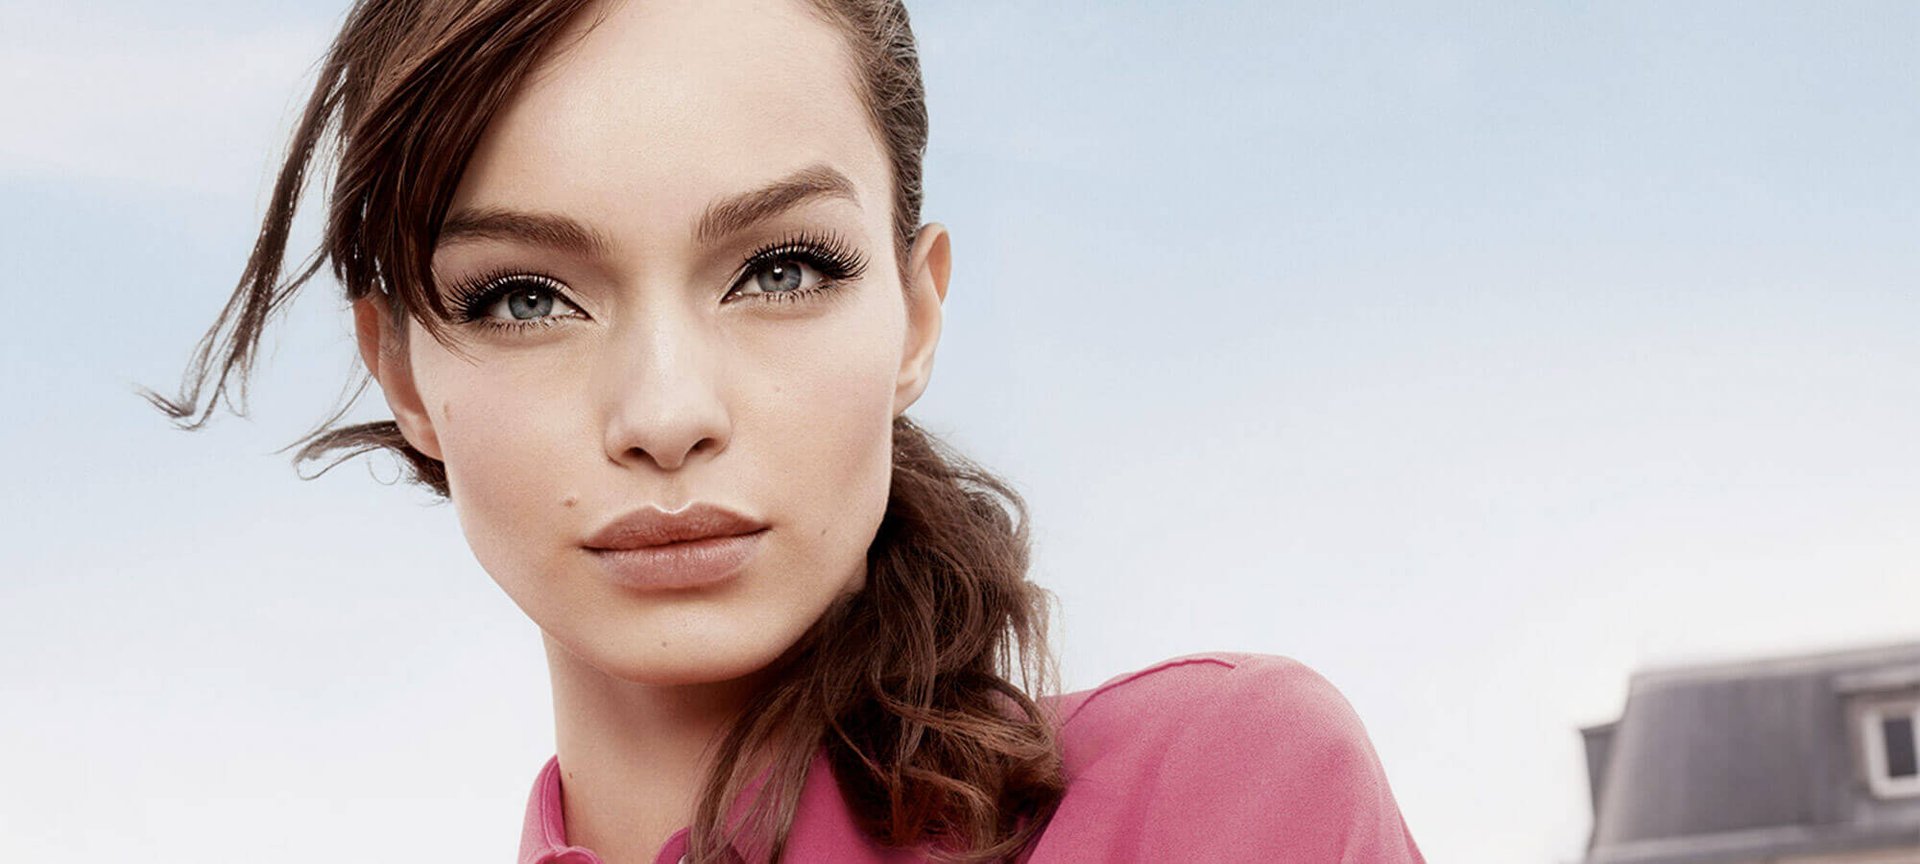 Måltid bølge Person med ansvar for sportsspil Best Makeup Products: Eye Makeup, Face, Lips & Nails | L'Oréal Paris